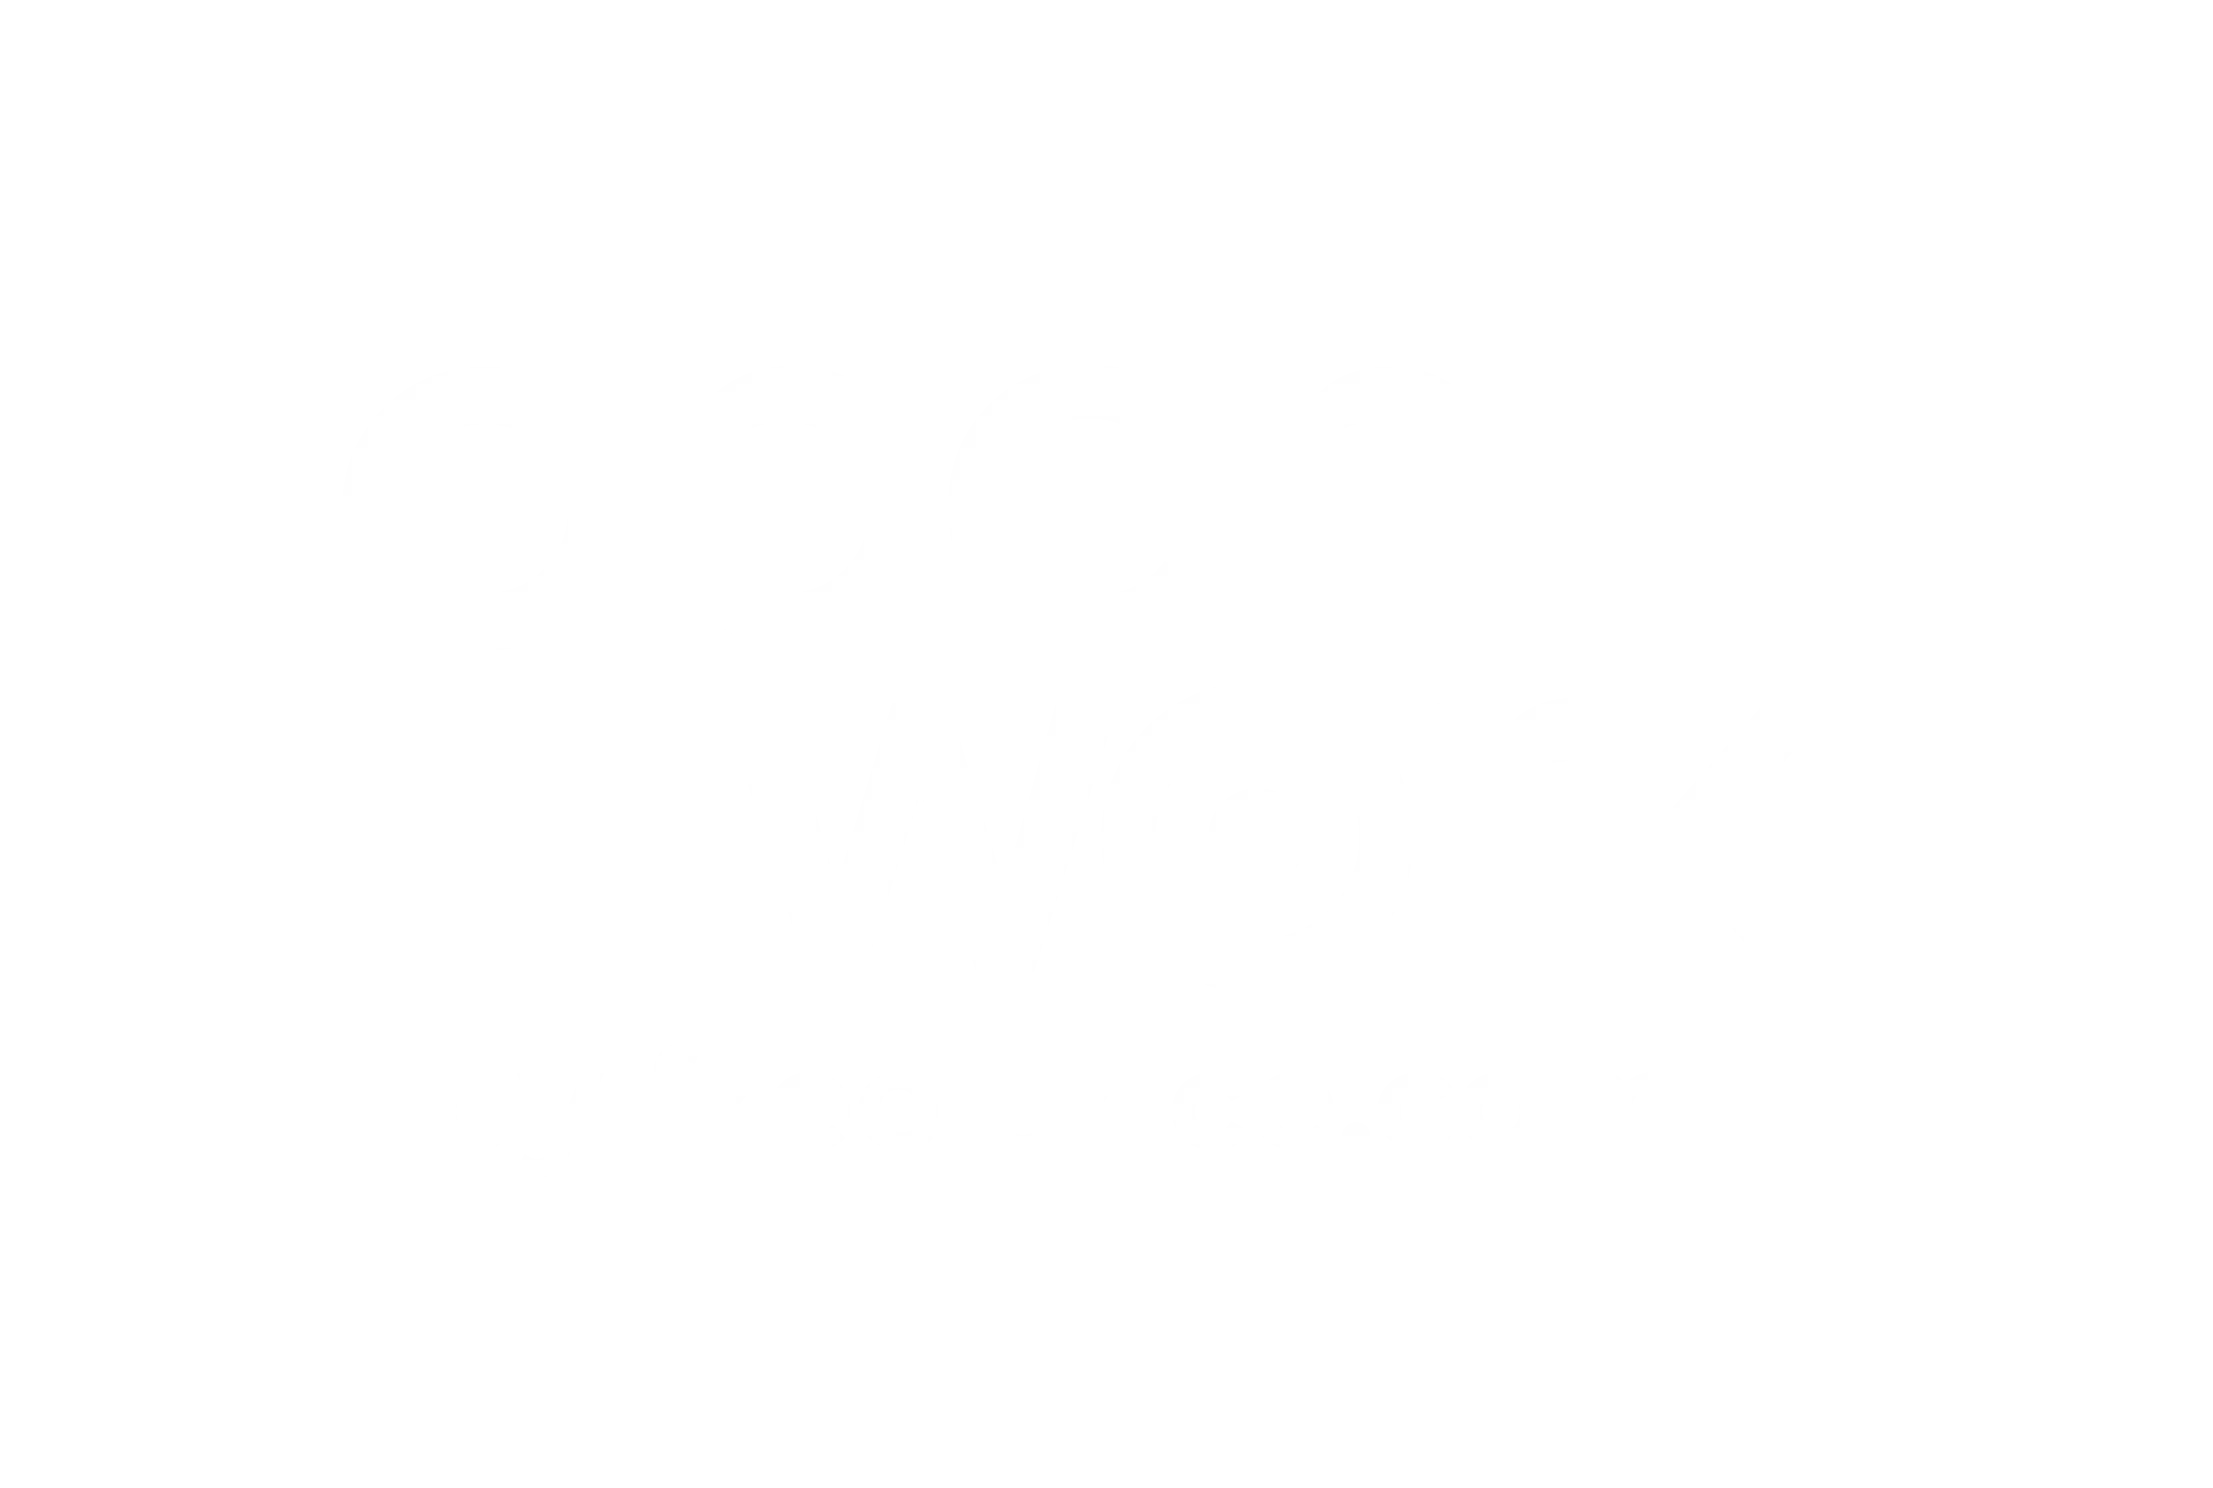 OpenWork Portage Salarial